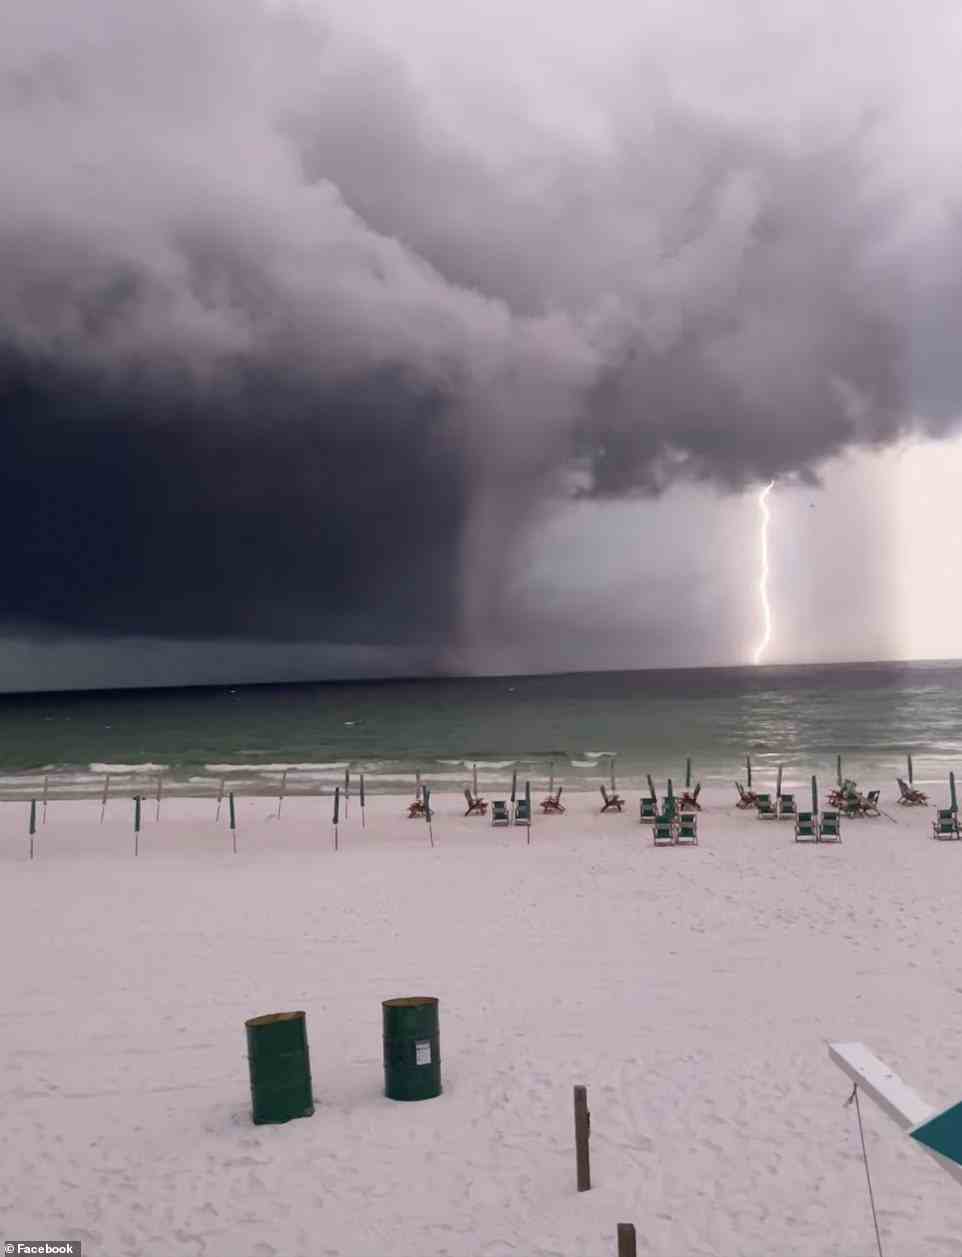 Es gab einen heftigen Sturm über dem Golf, der die Wasserhose auslöste.  Abgebildet ist ein leerer Strand, der evakuiert wurde, nachdem der Trichter entdeckt wurde